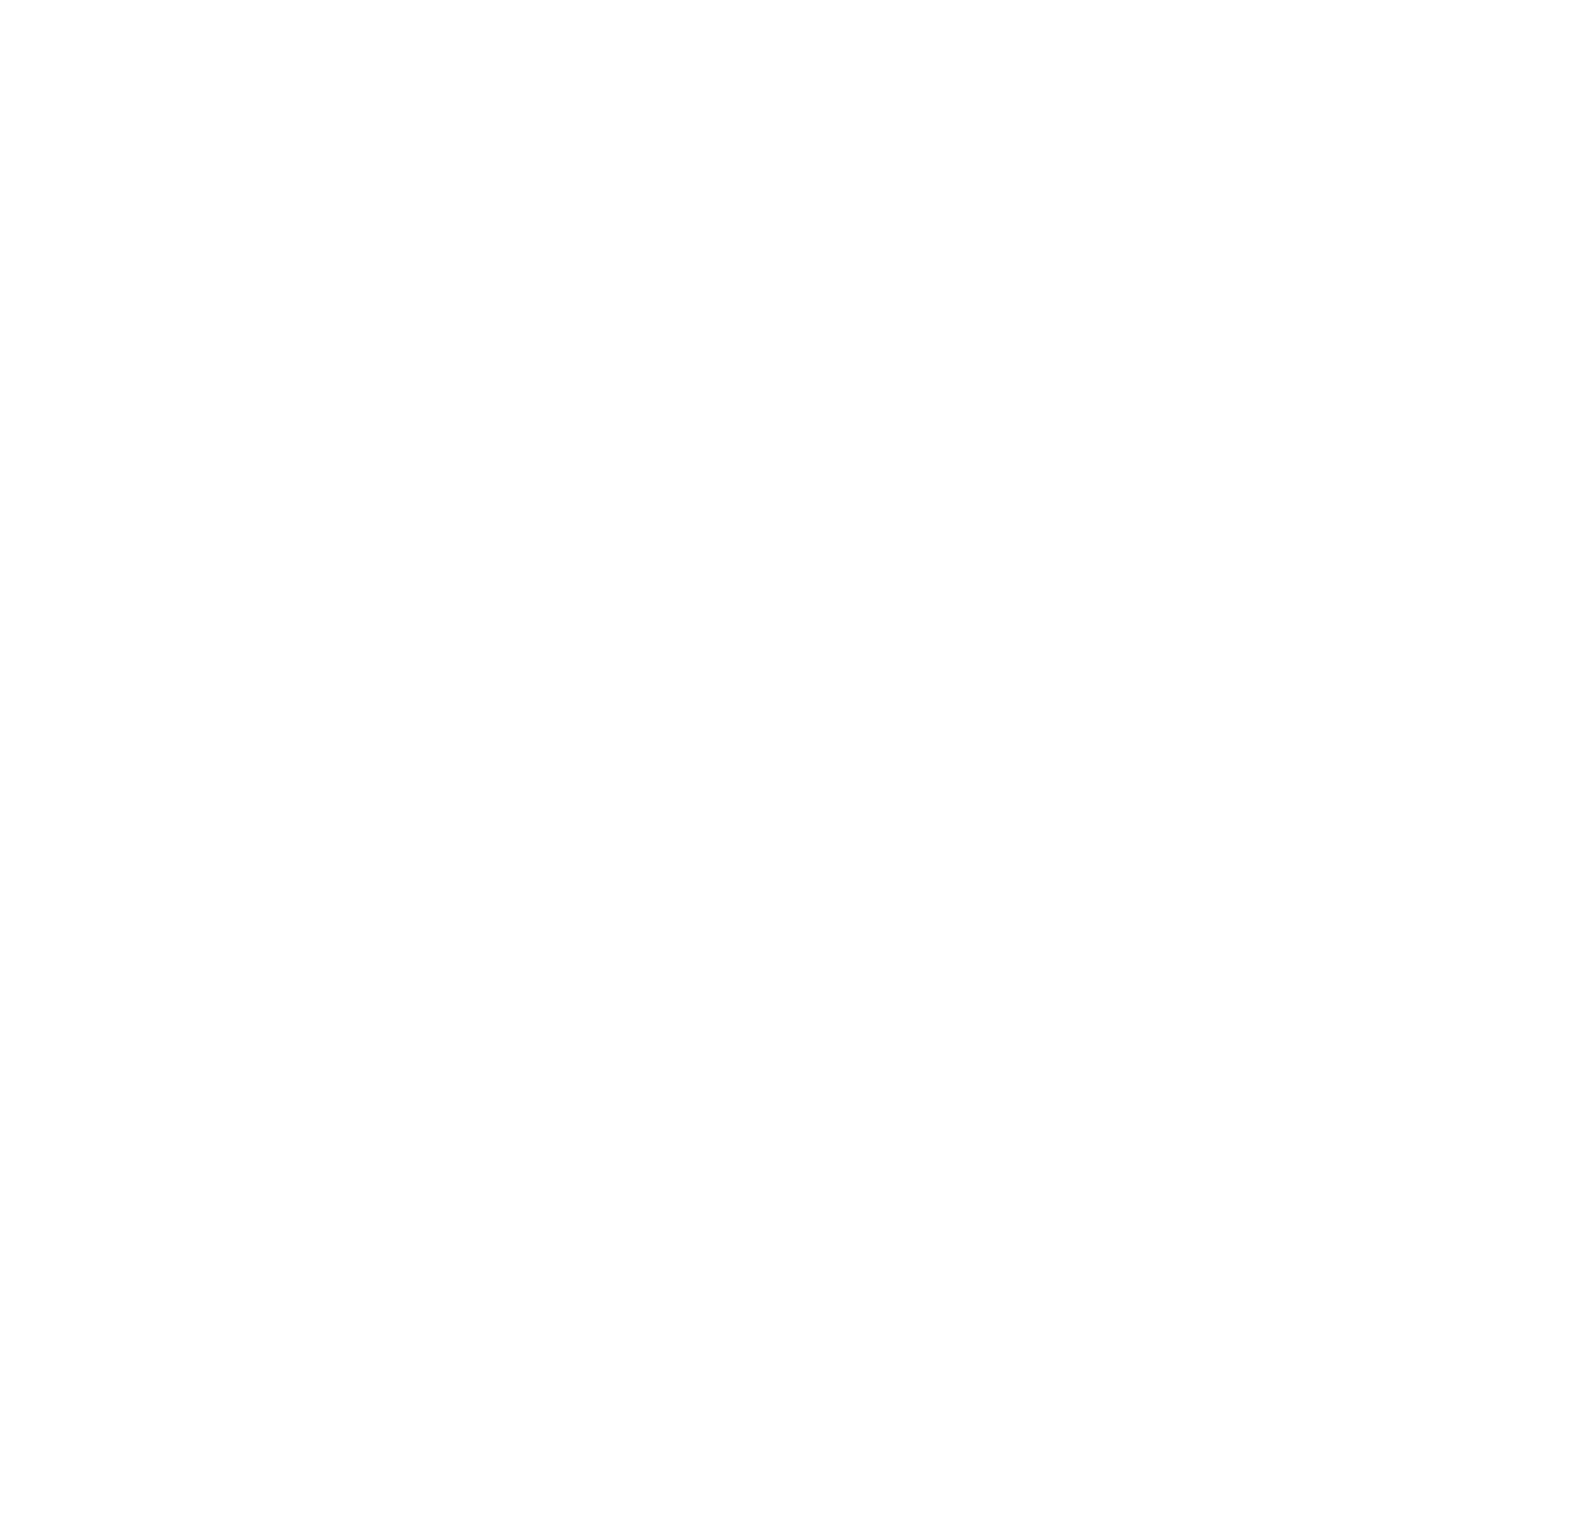 UroGen Pharma logo for dark backgrounds (transparent PNG)